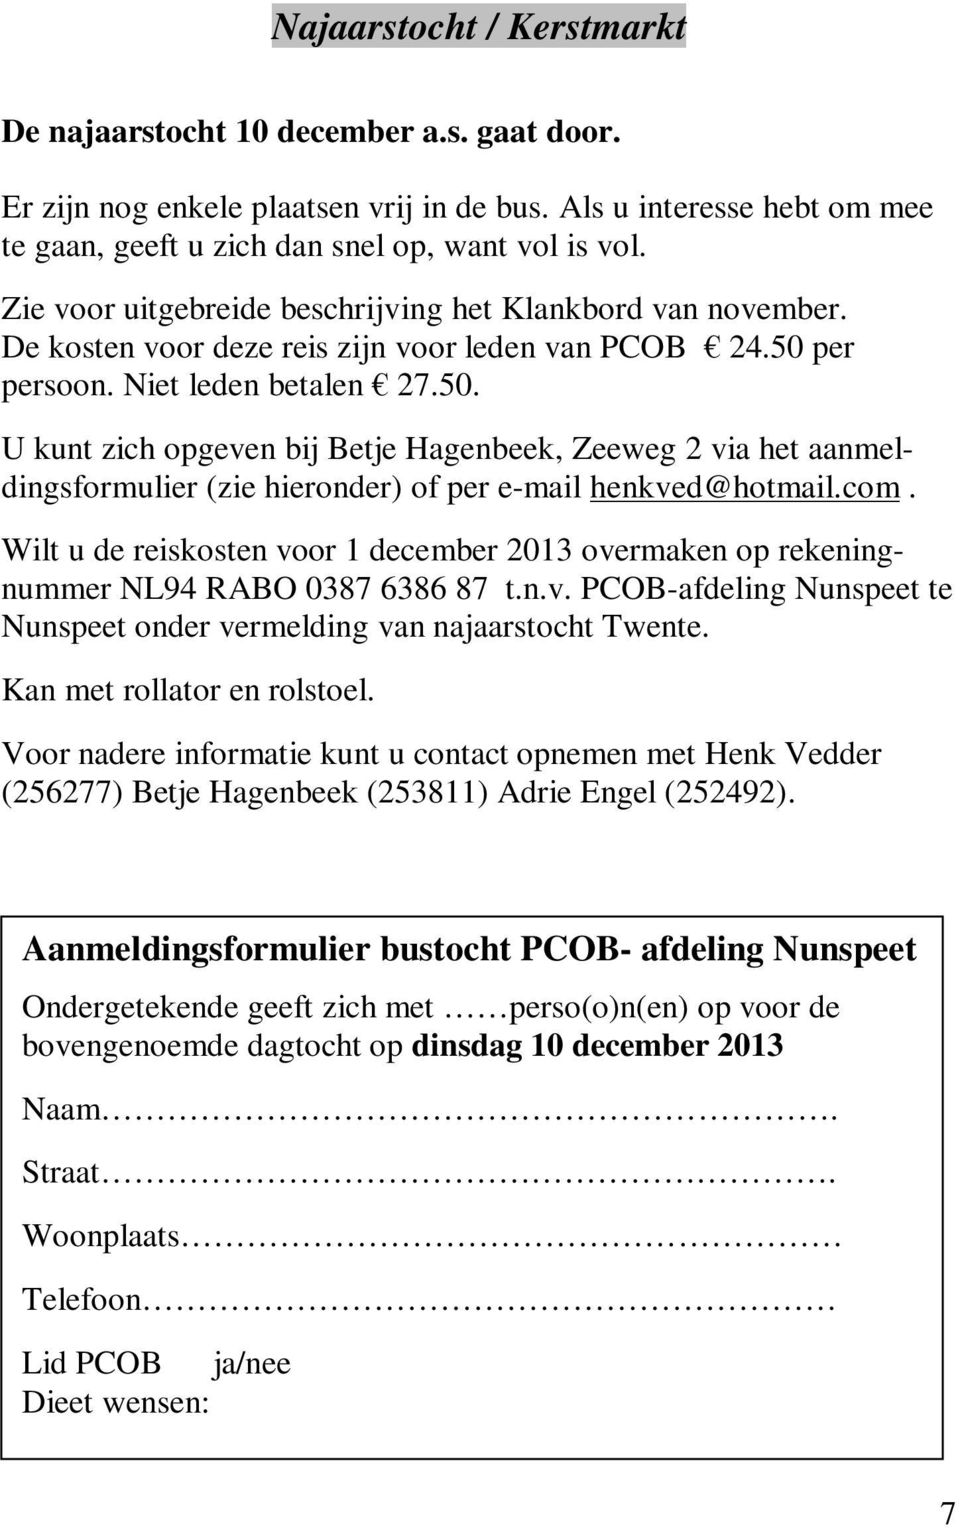 per persoon. Niet leden betalen 27.50. U kunt zich opgeven bij Betje Hagenbeek, Zeeweg 2 via het aanmeldingsformulier (zie hieronder) of per e-mail henkved@hotmail.com.